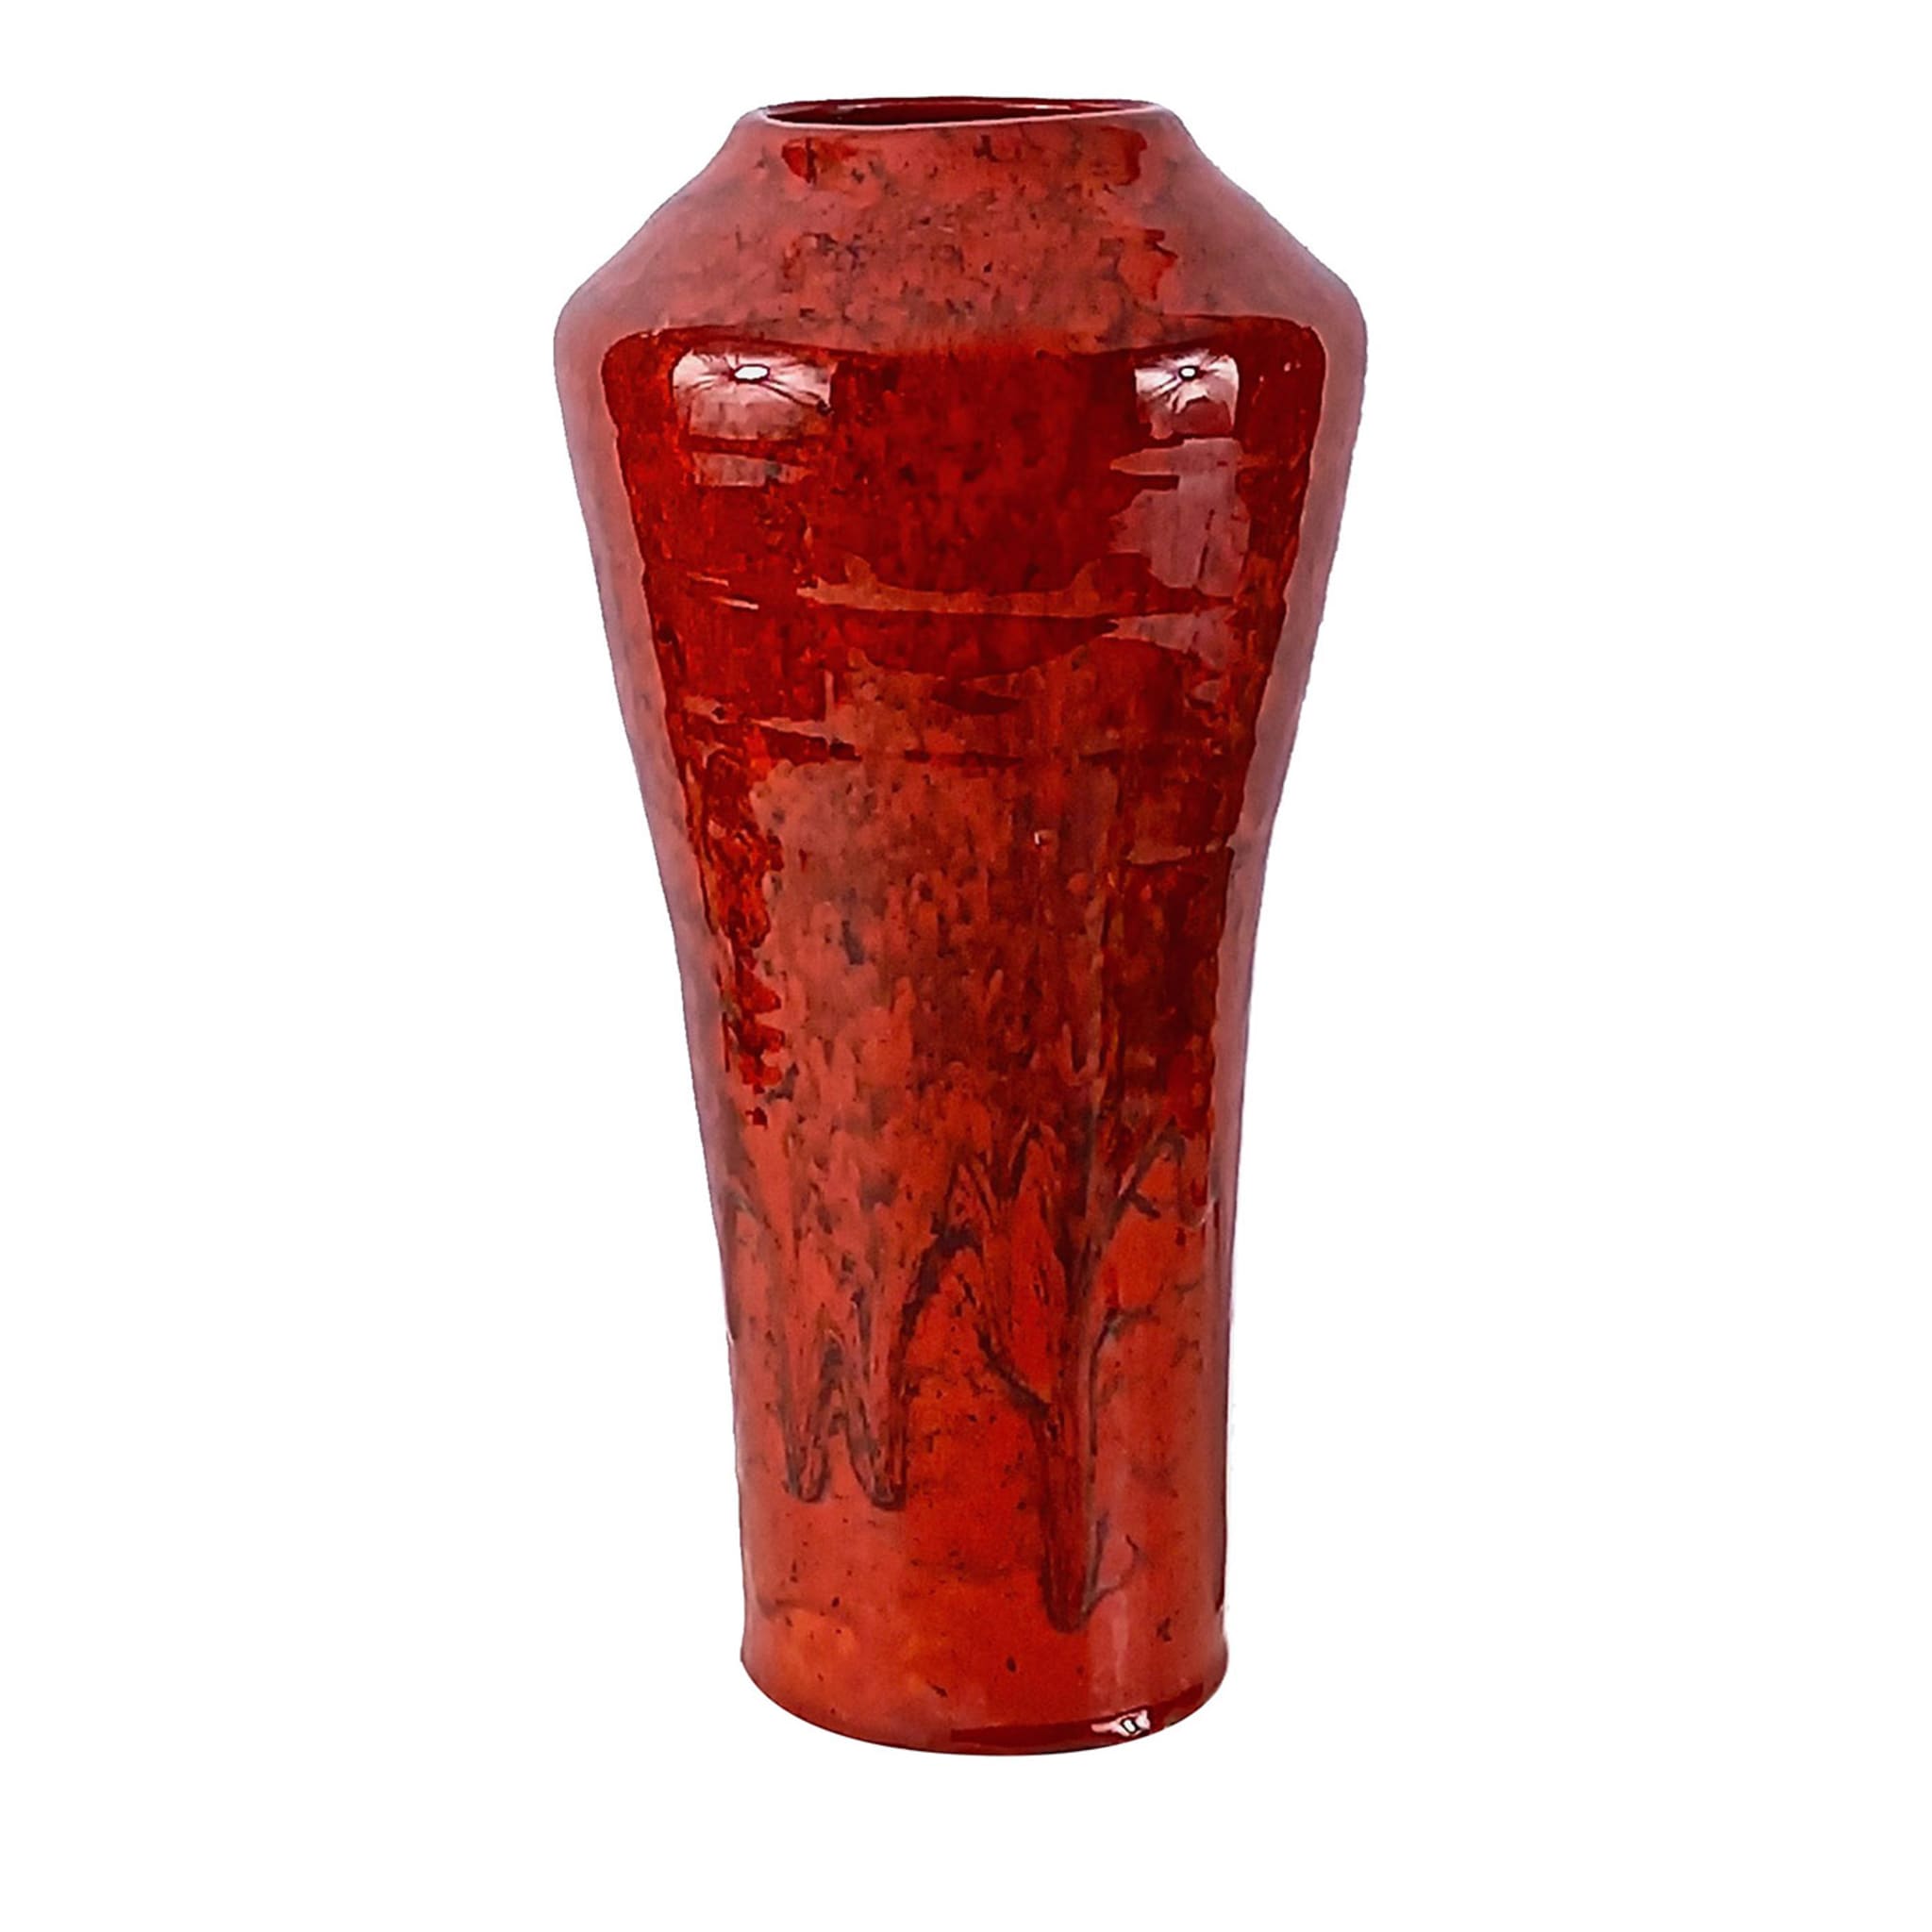 Gran-Rosso-Keramik-Vase #2  - Hauptansicht